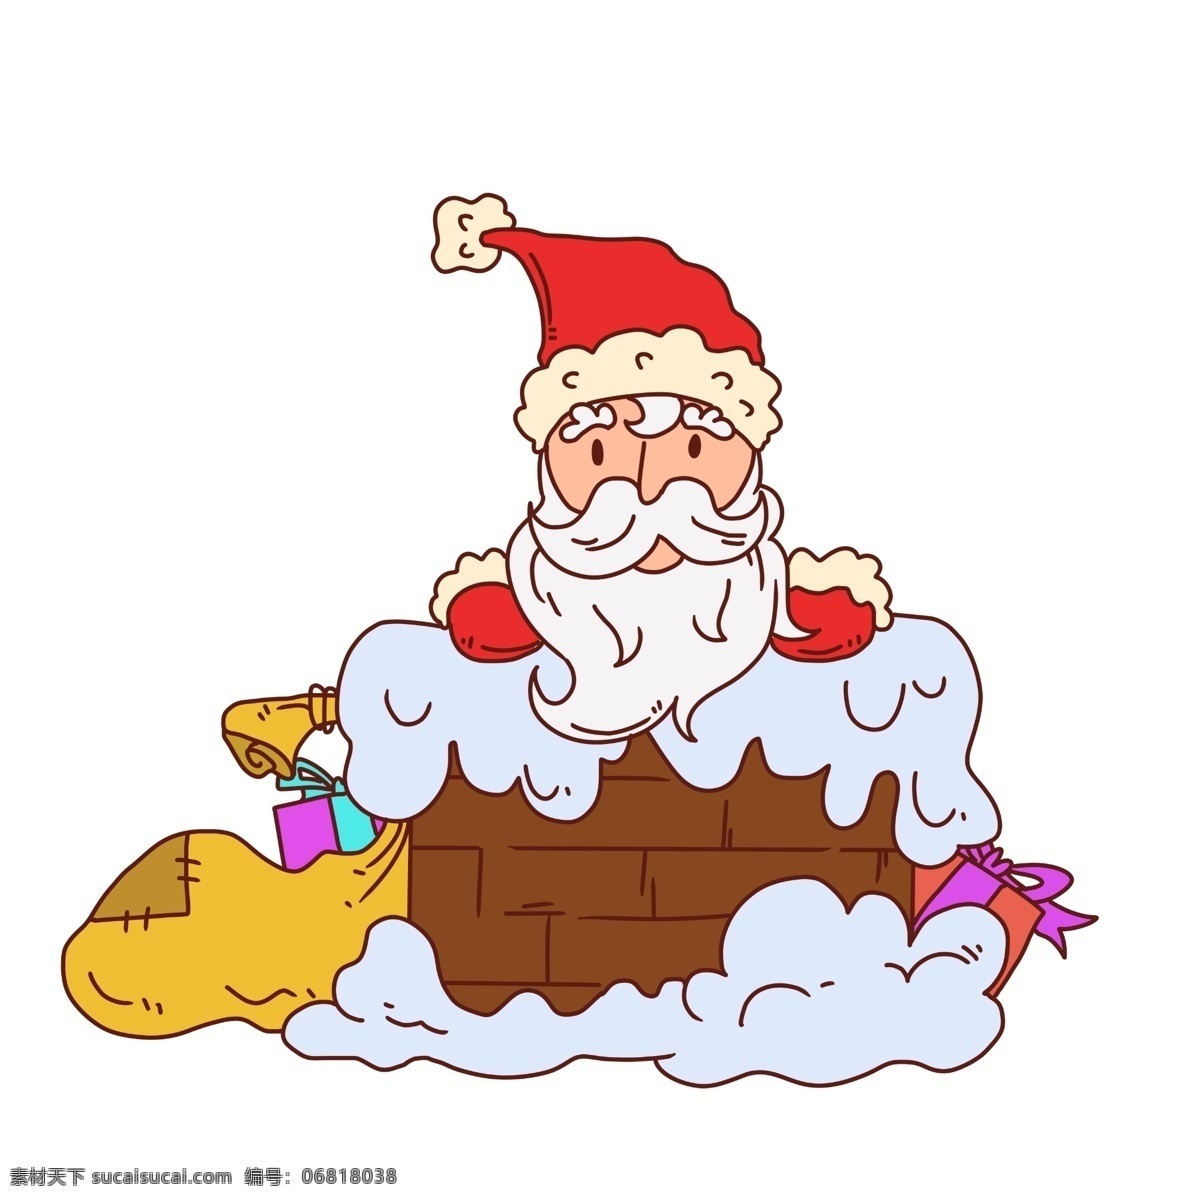 卡通 烟囱 上 飞行 圣诞老人 圣诞节 圣诞礼物 礼物盒 可爱圣诞老人 手绘圣诞节 圣诞节插画